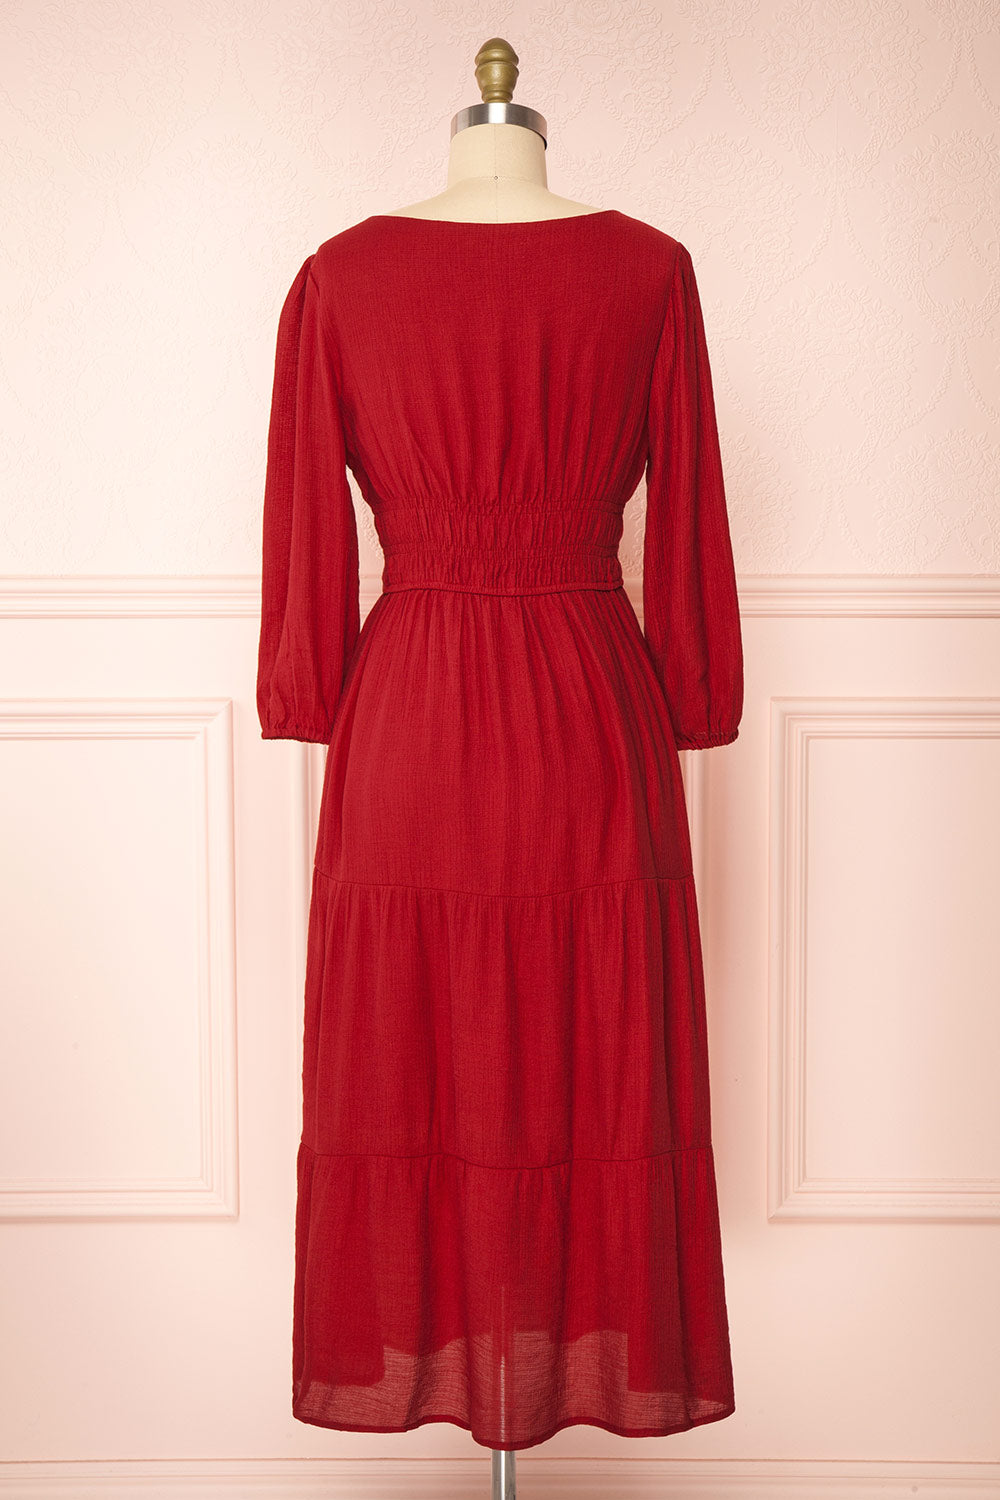 Badira Red Tiered Midi Dress w/ Square Neckline | Boutique 1861 back view 